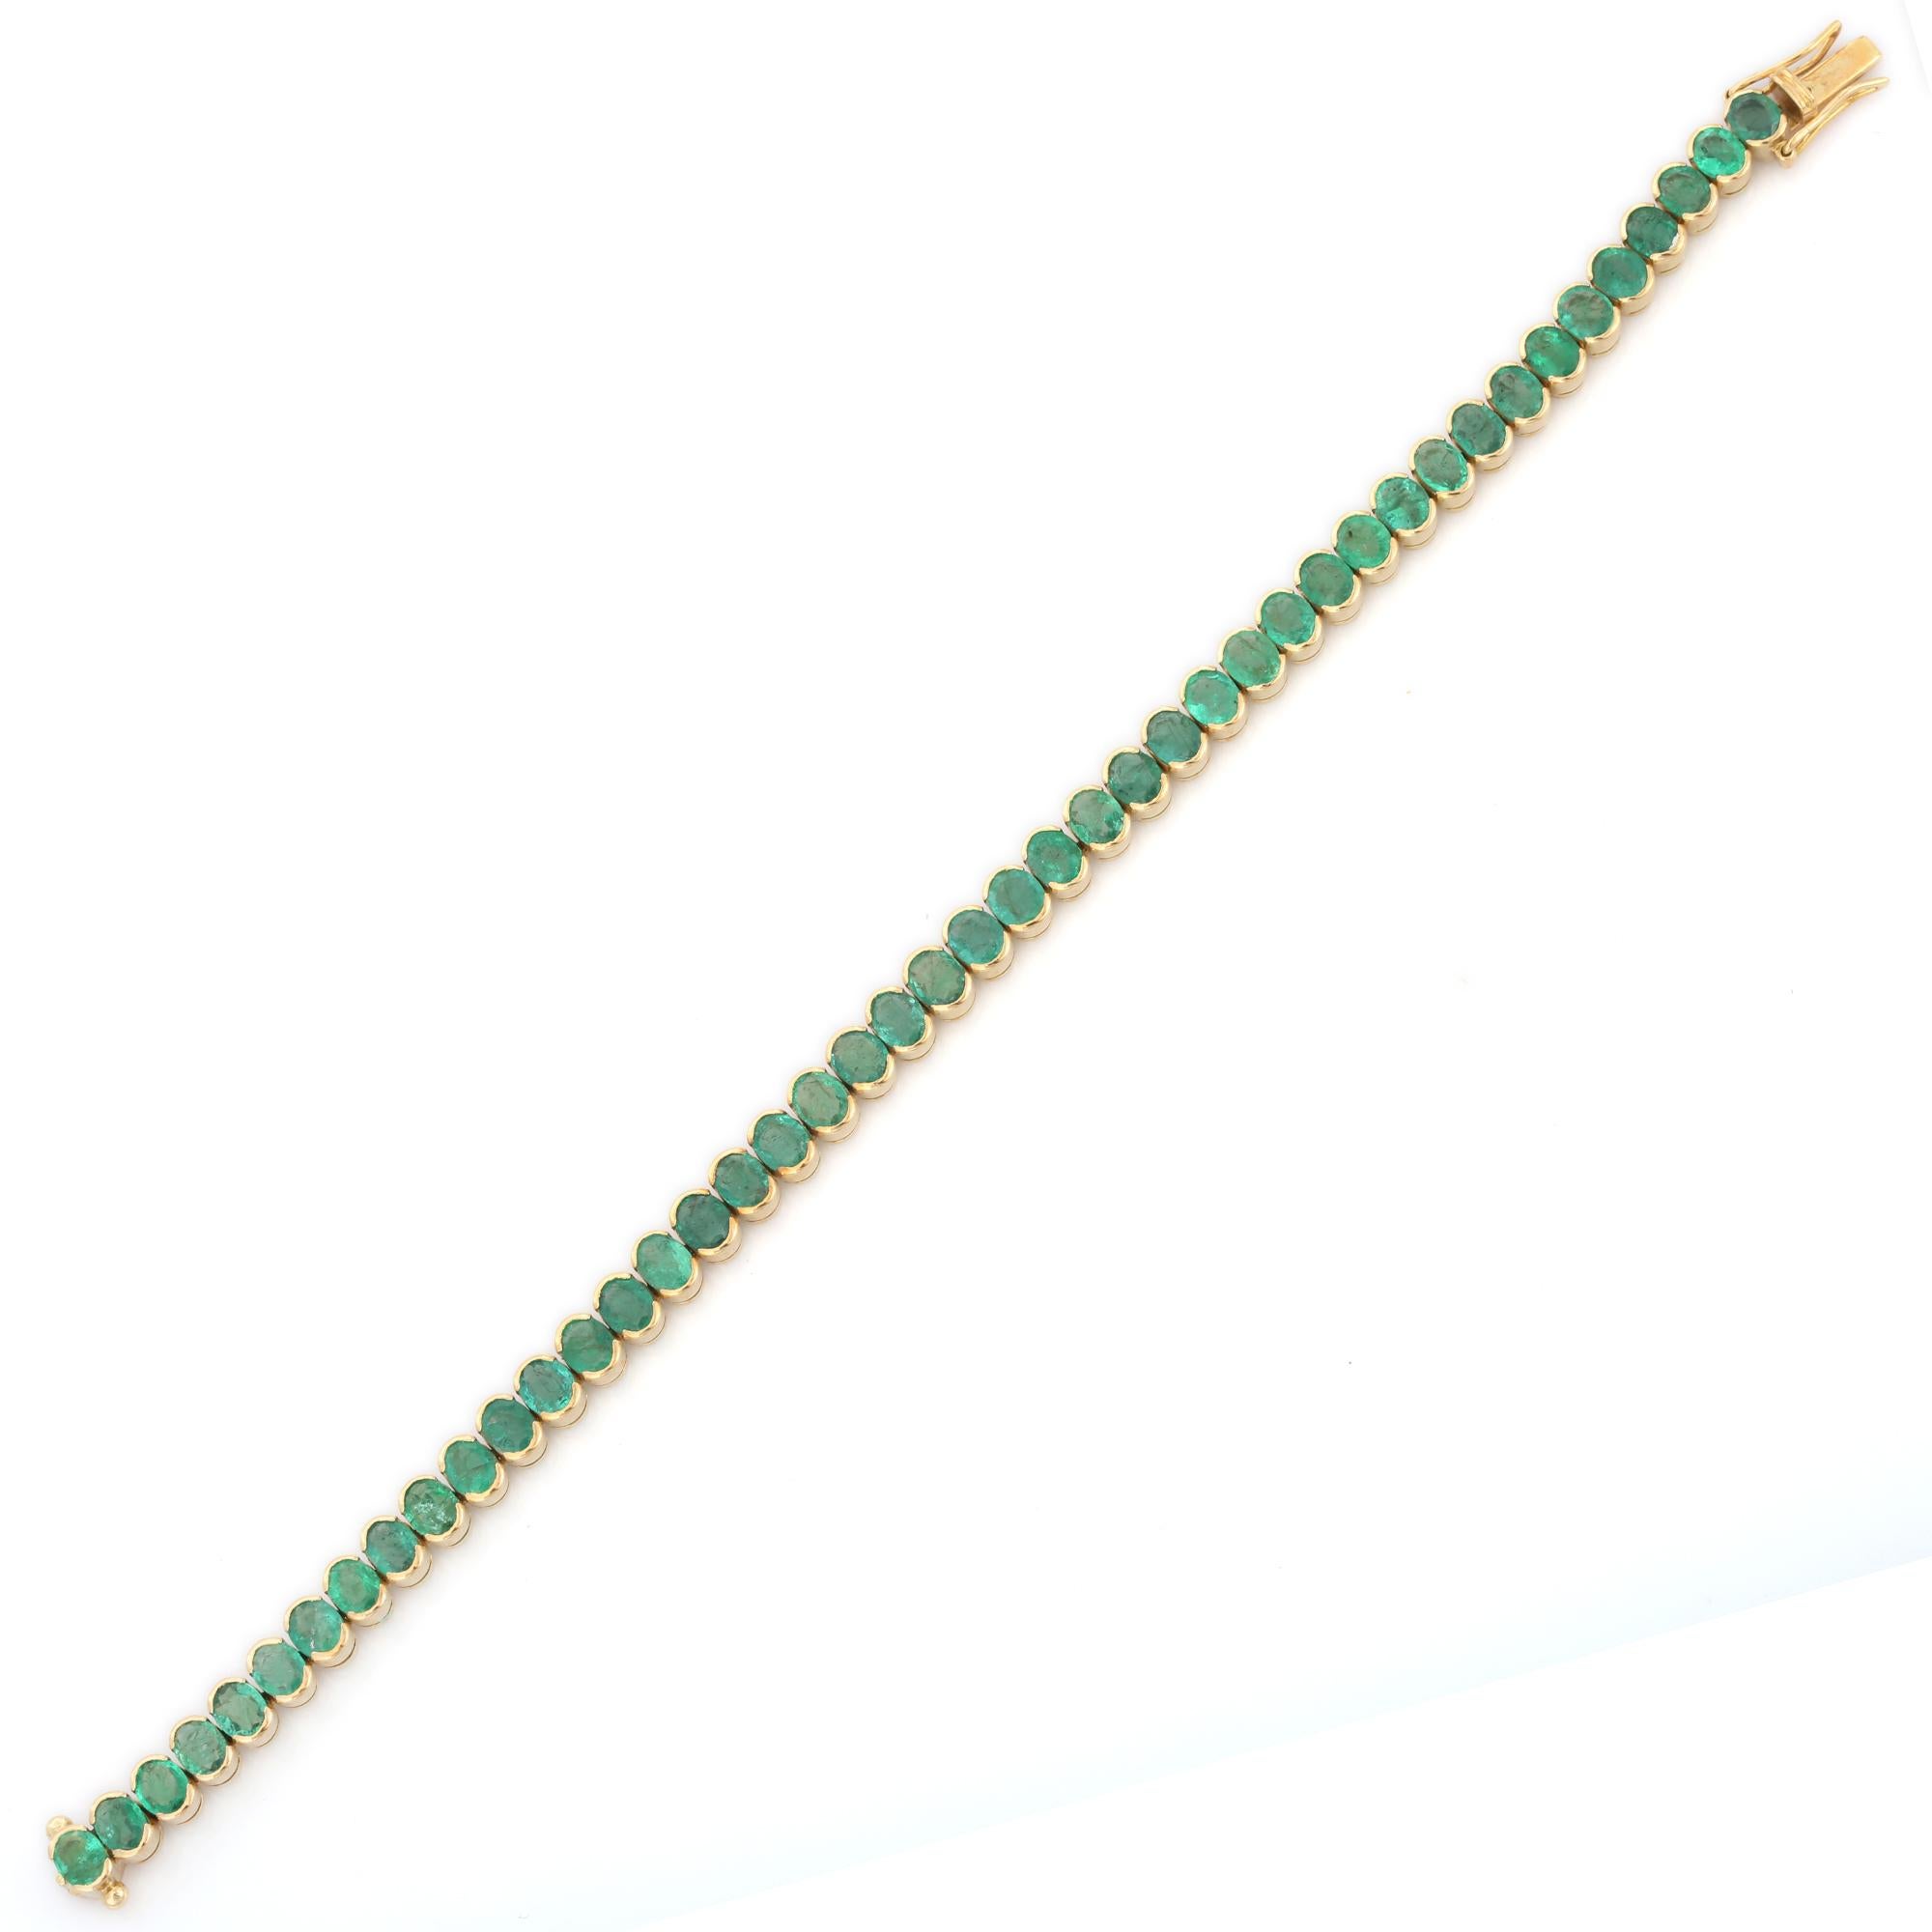 Oval Cut Certified 14.15 Carat Emerald Gemstone Tennis Bracelet in 18K Yellow Gold For Sale